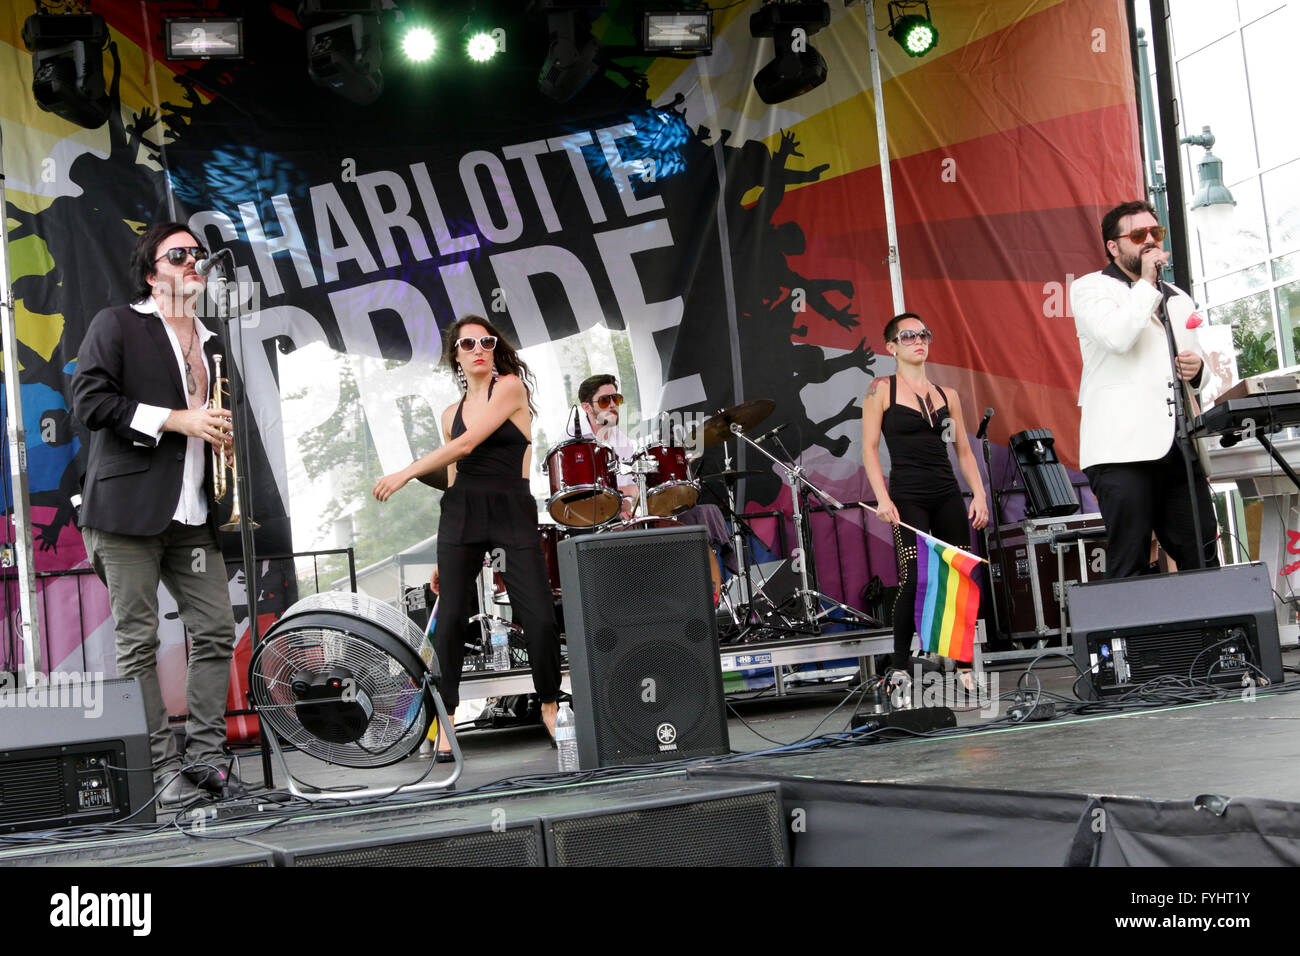 2014 Charlotte Pride Festival Stock Photo